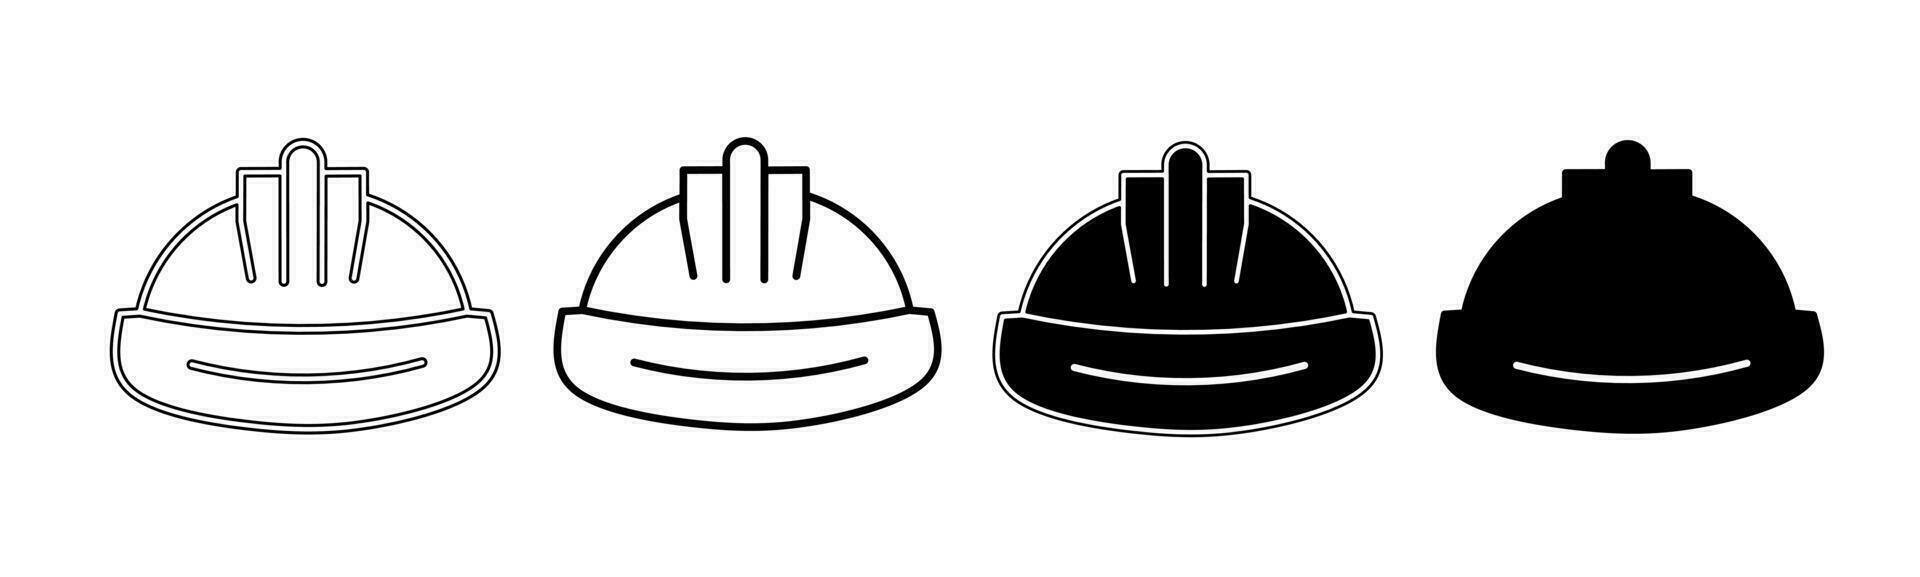 noir et blanc illustration de une casque. casque icône collection avec doubler. Stock vecteur illustration.